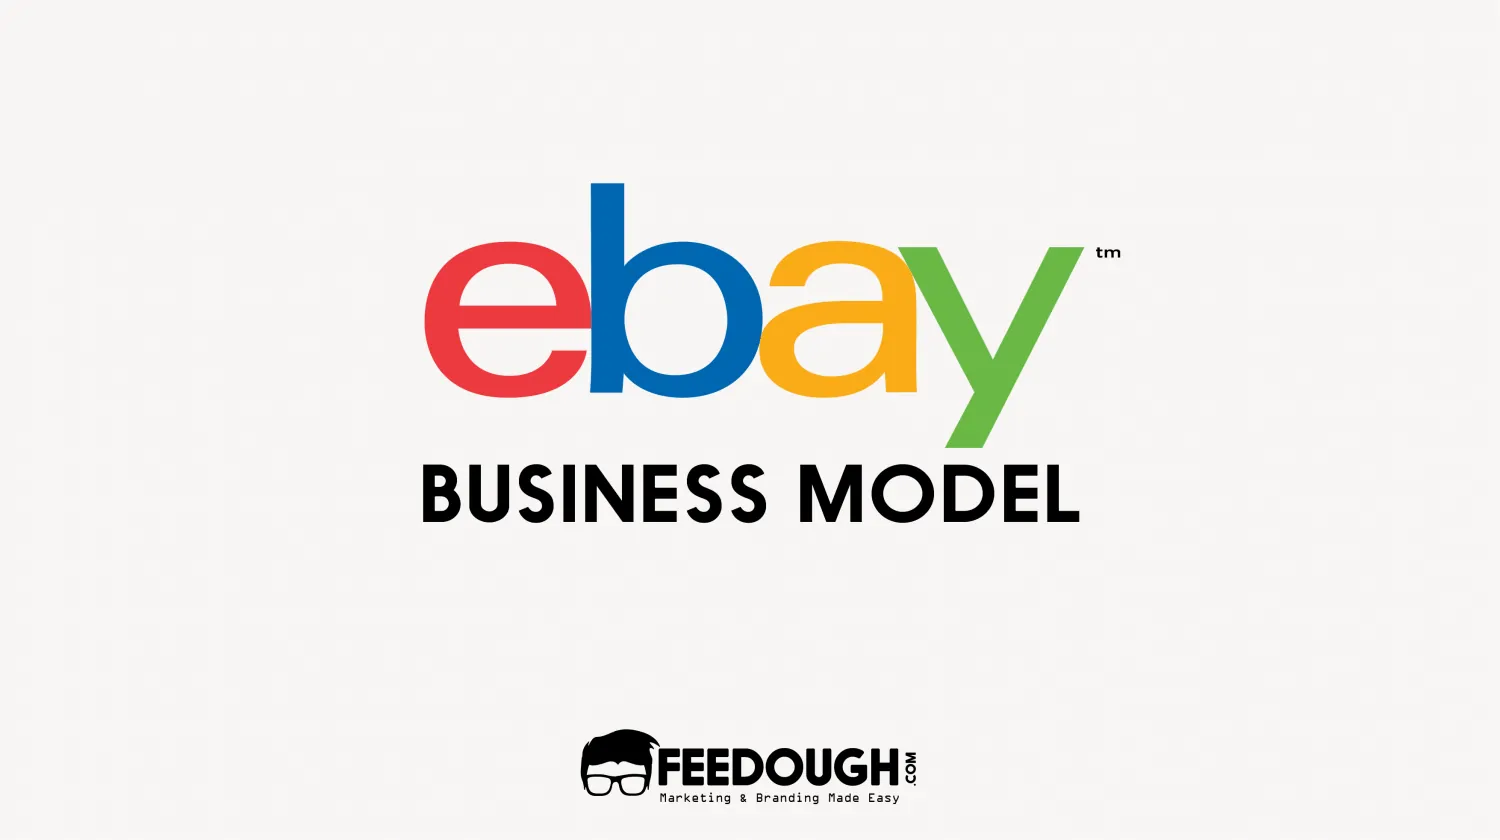 eBay Business Model | How Does eBay Make Money?